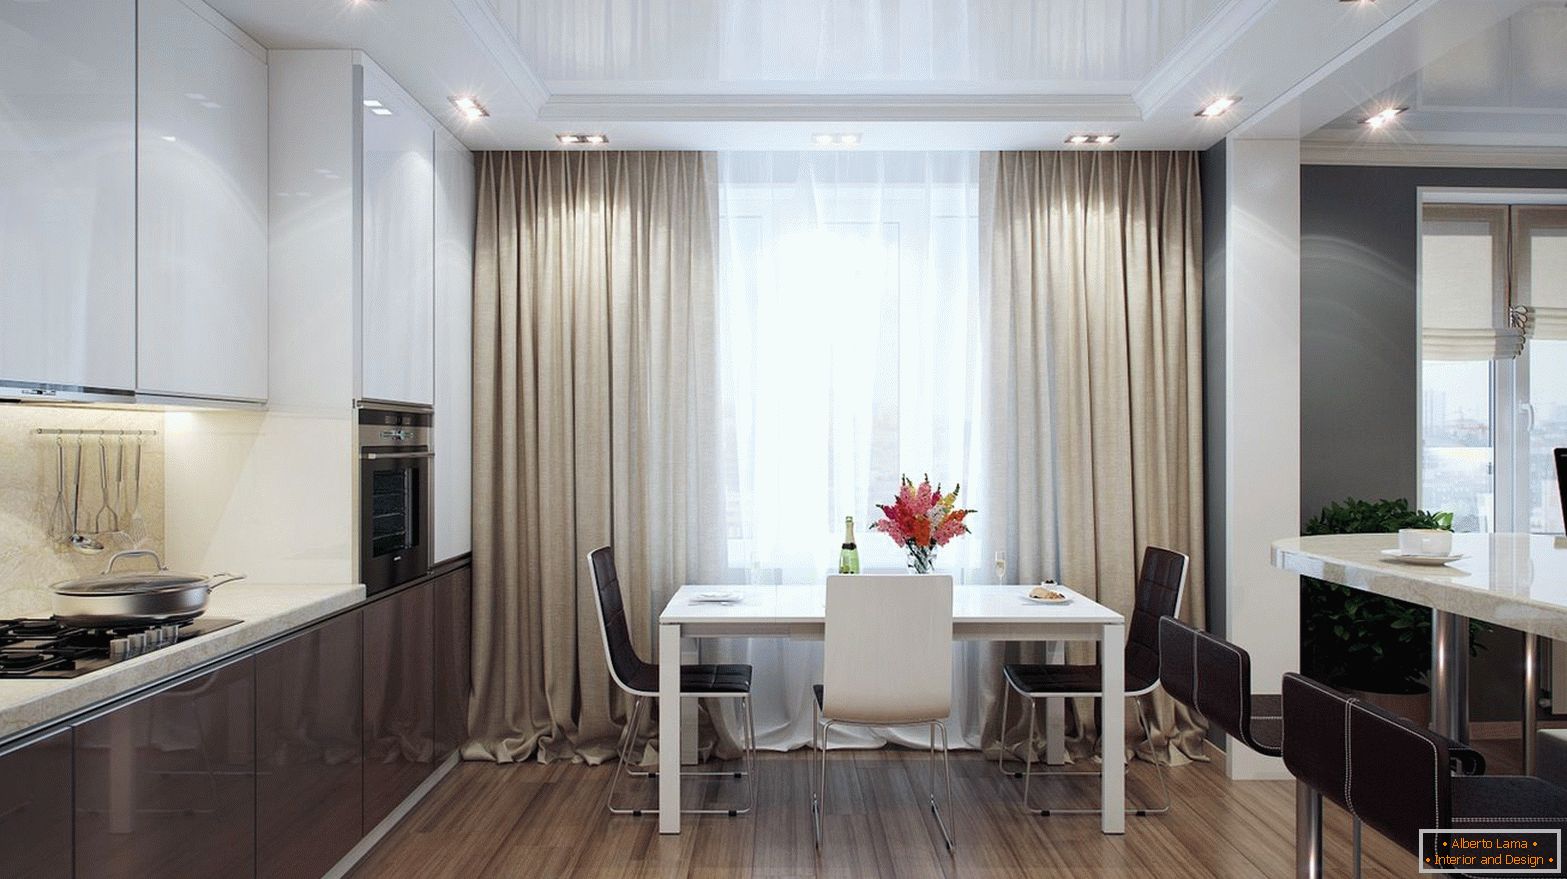 Cozinha moderna com cortinas cinzentas